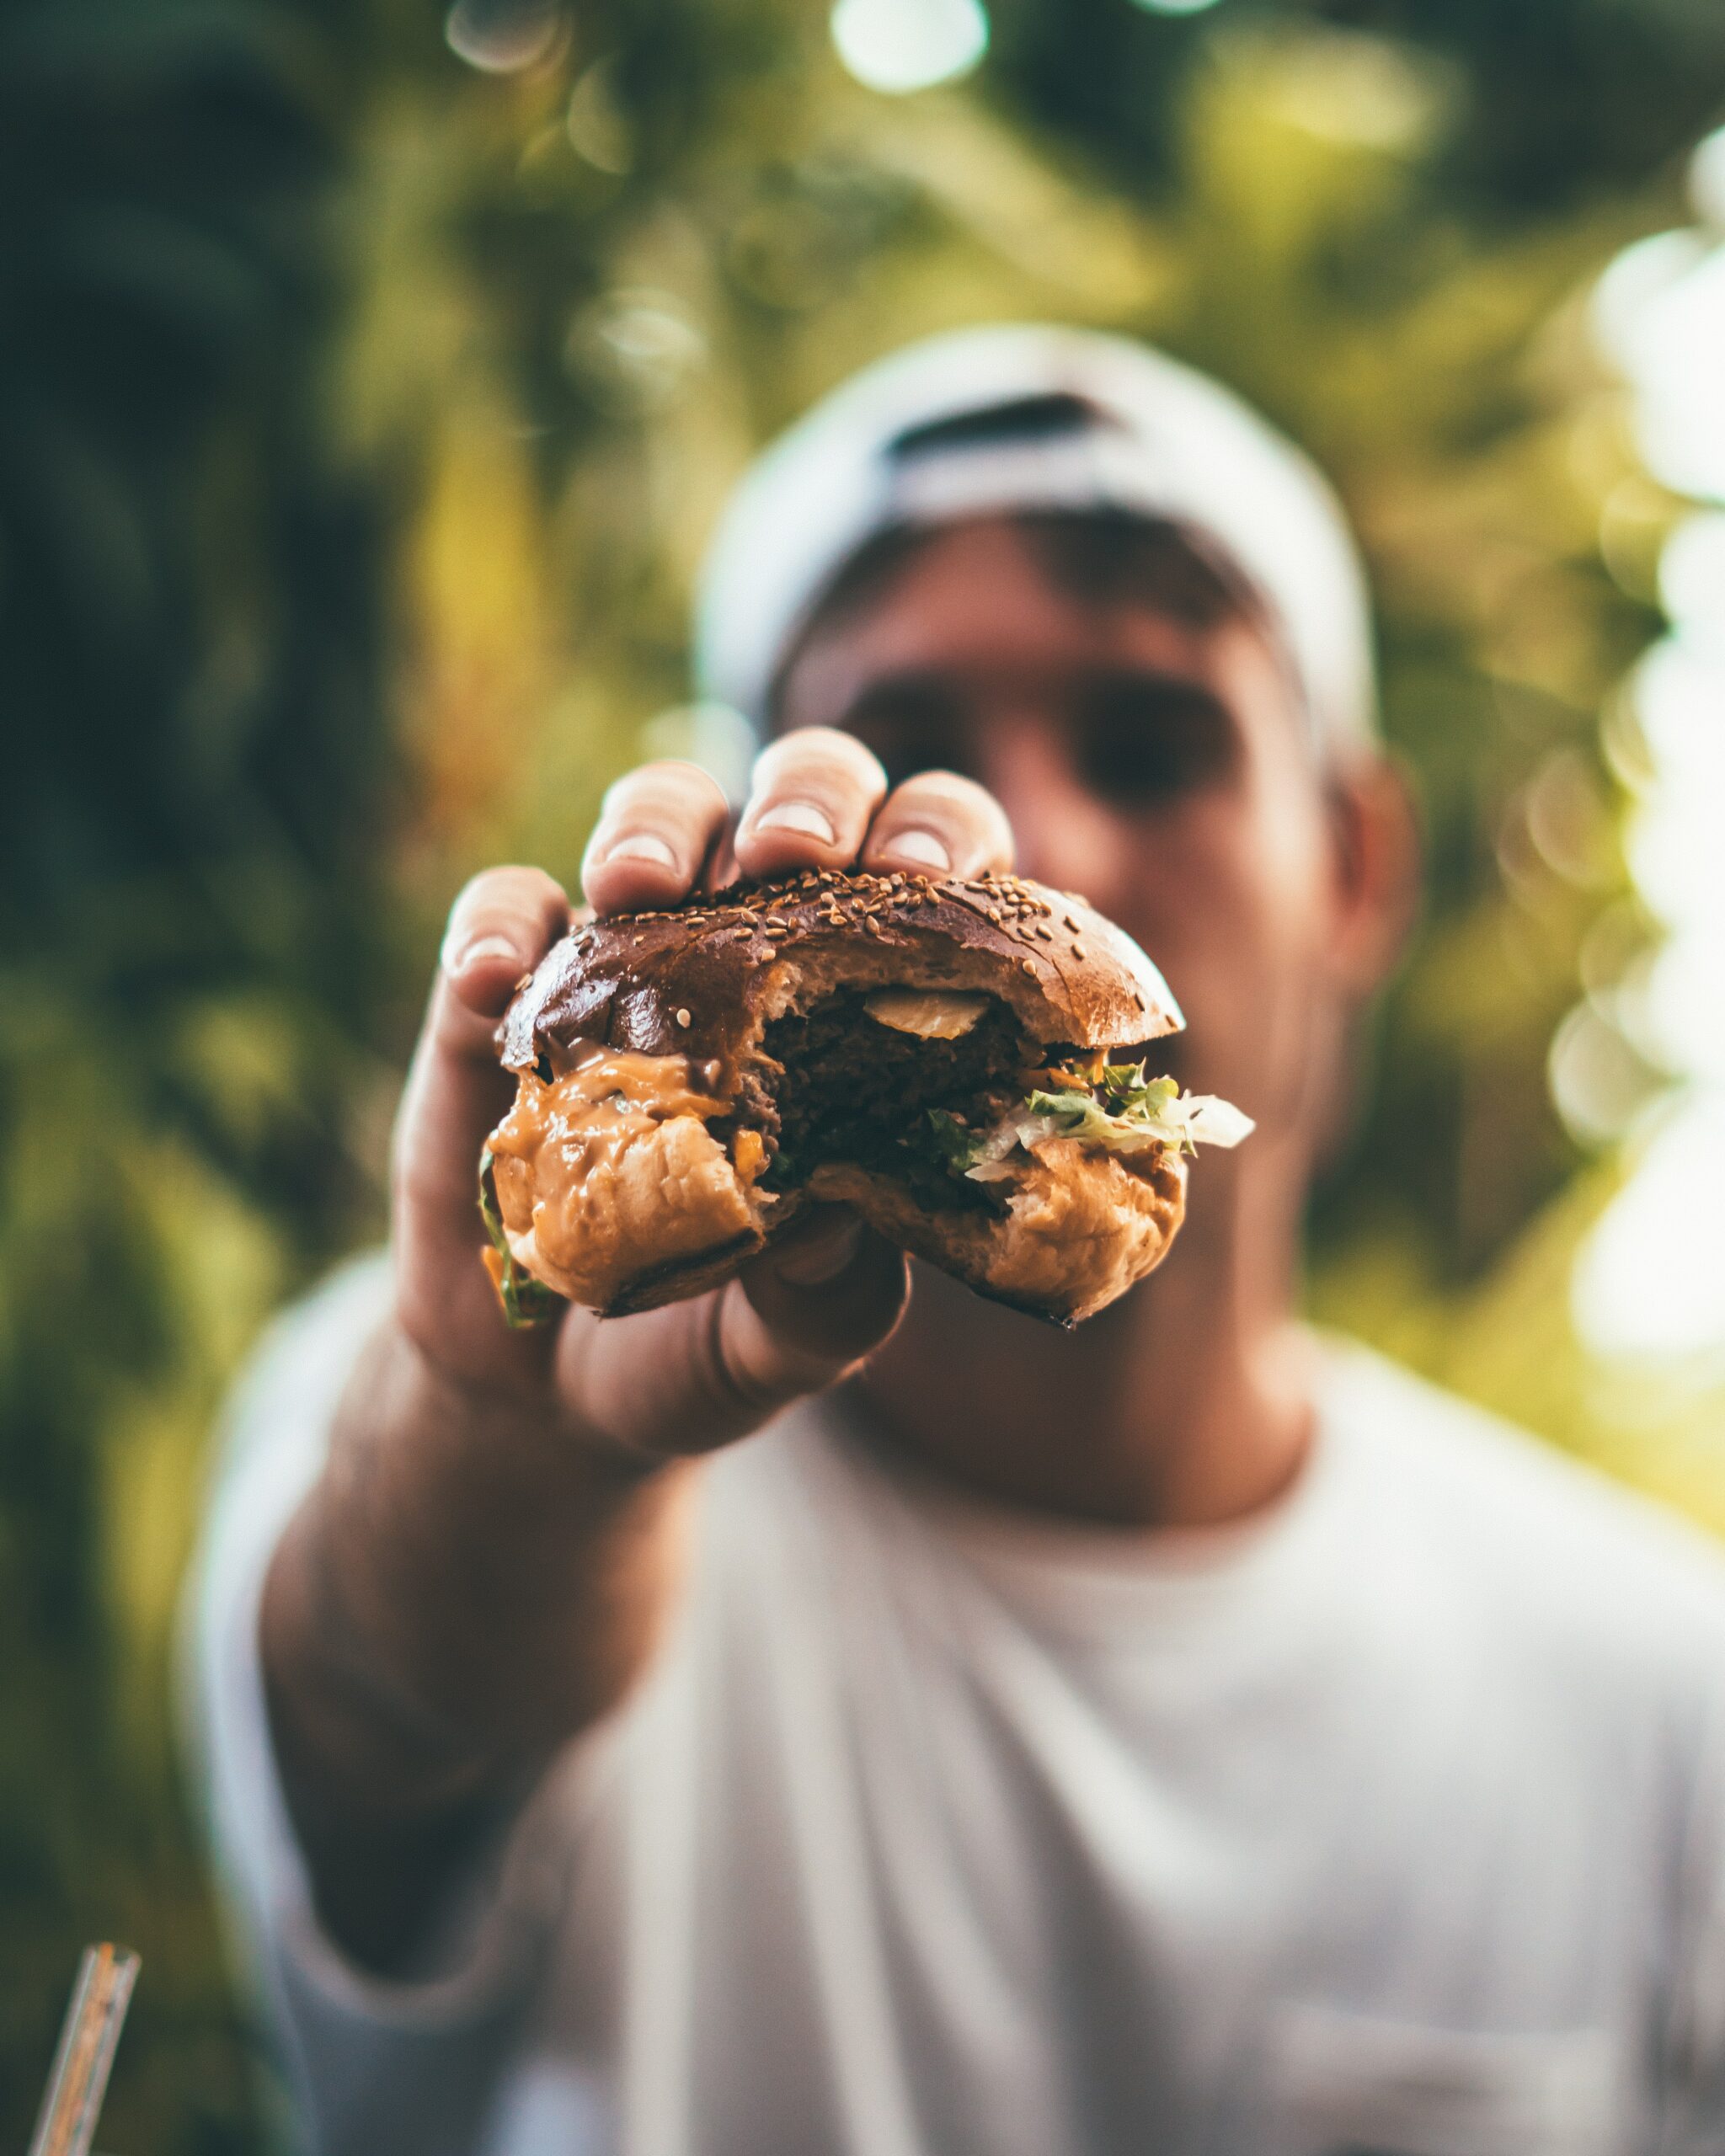 Die weltweit bekannte Fast-Food-Kette Burger King nutzt Qlik Sense, um durch Echtzeitdaten die Leistung ihrer Restaurants zu steigern. Damit ist Burger King nicht die erste Restaurant-Kette, die Qlik Sense einsetzt.